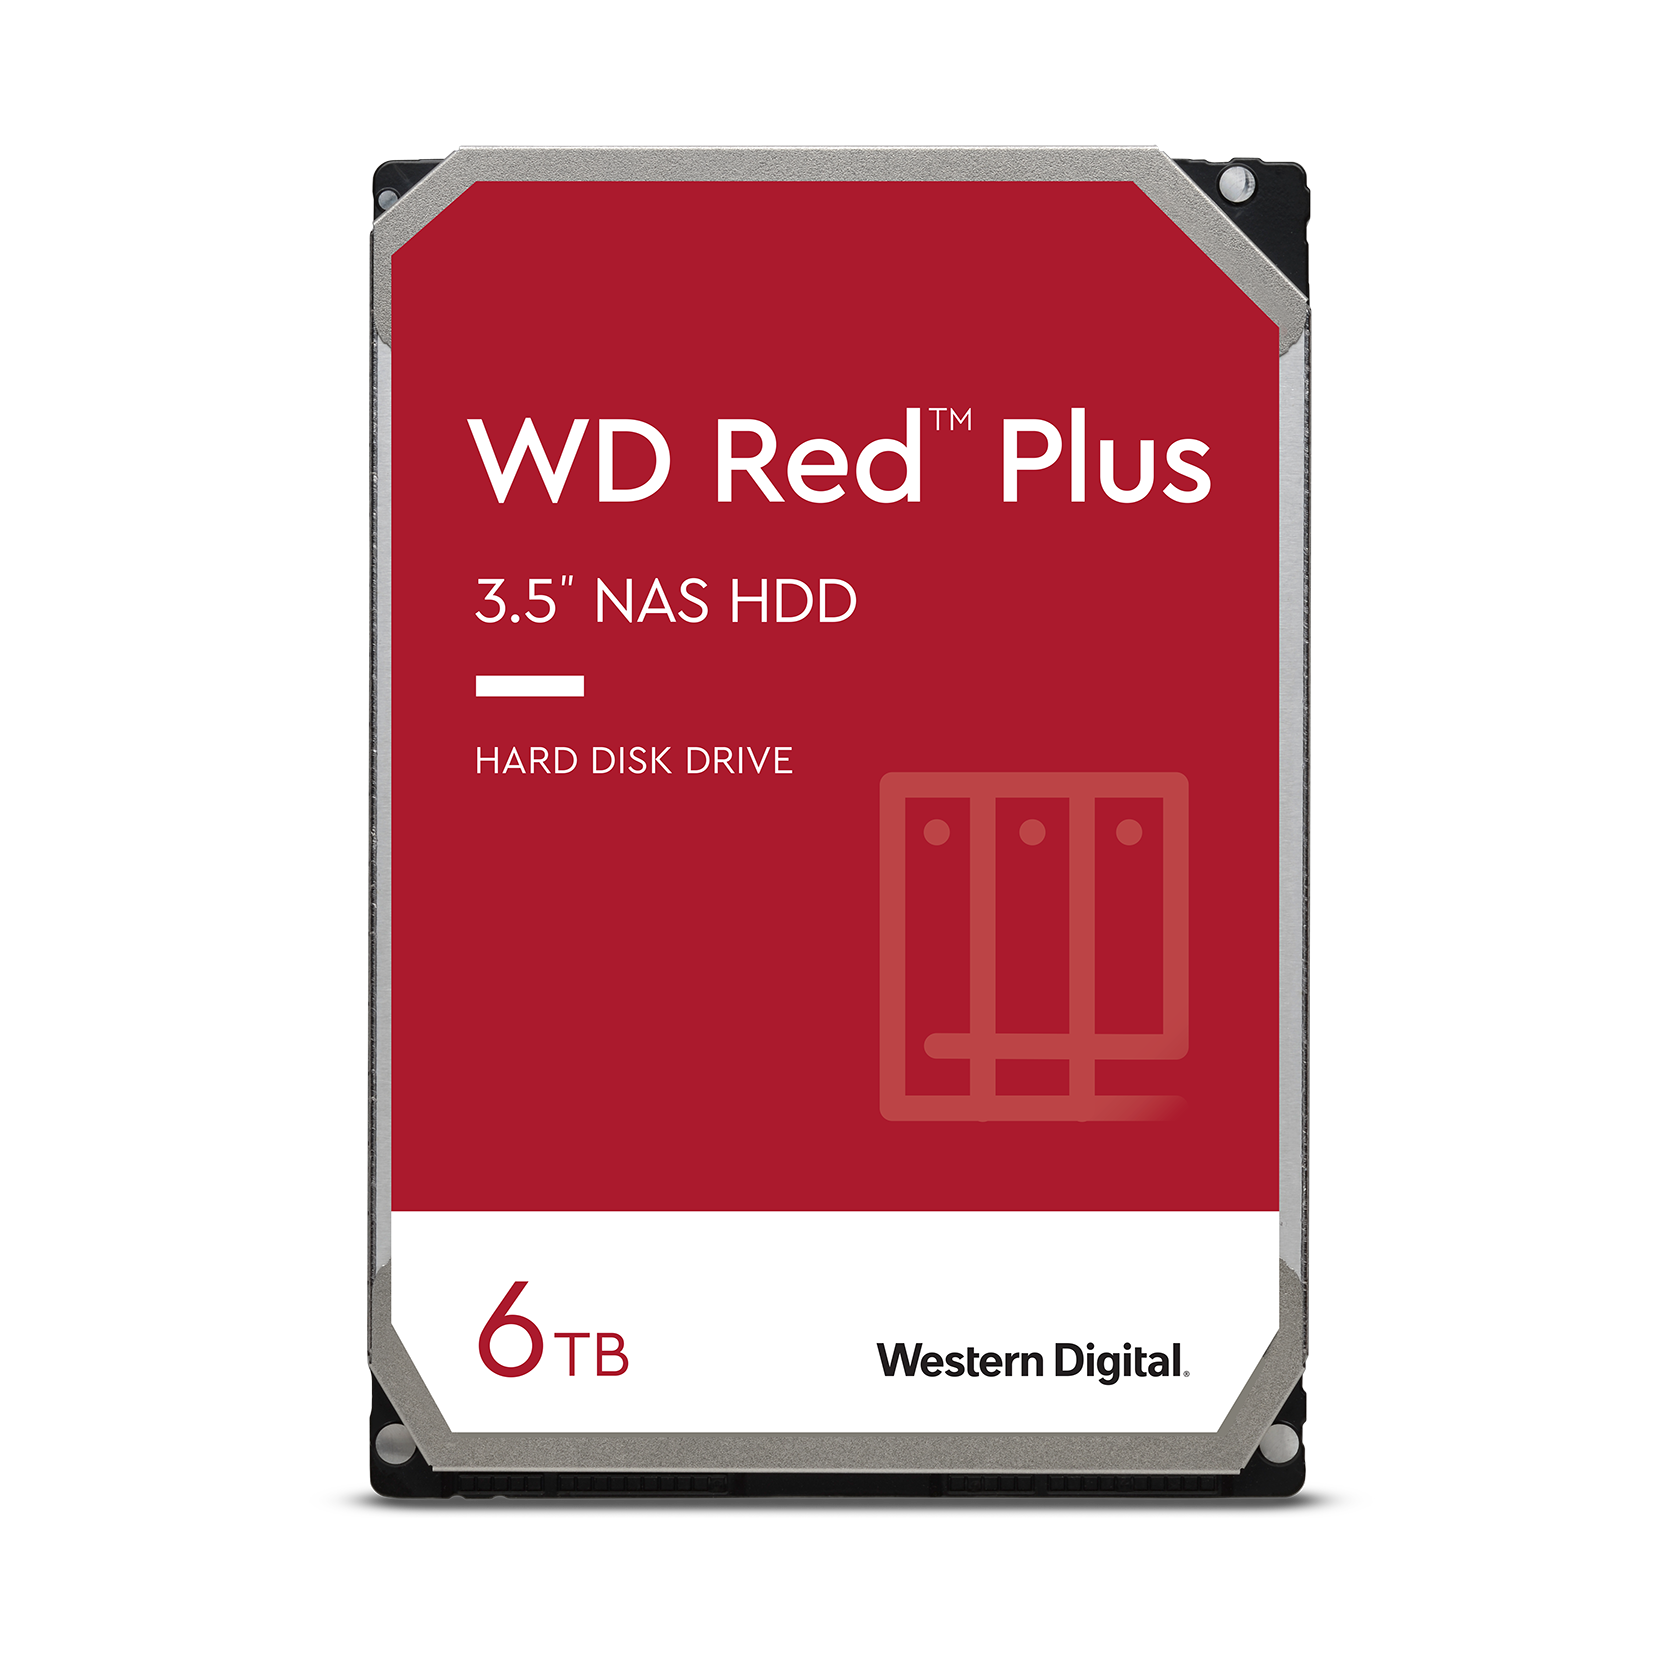 WD Red Plus 6Tb 3.5" NAS Hard Drive (256Mb 5400rpm SATA3) #WD60EFPX